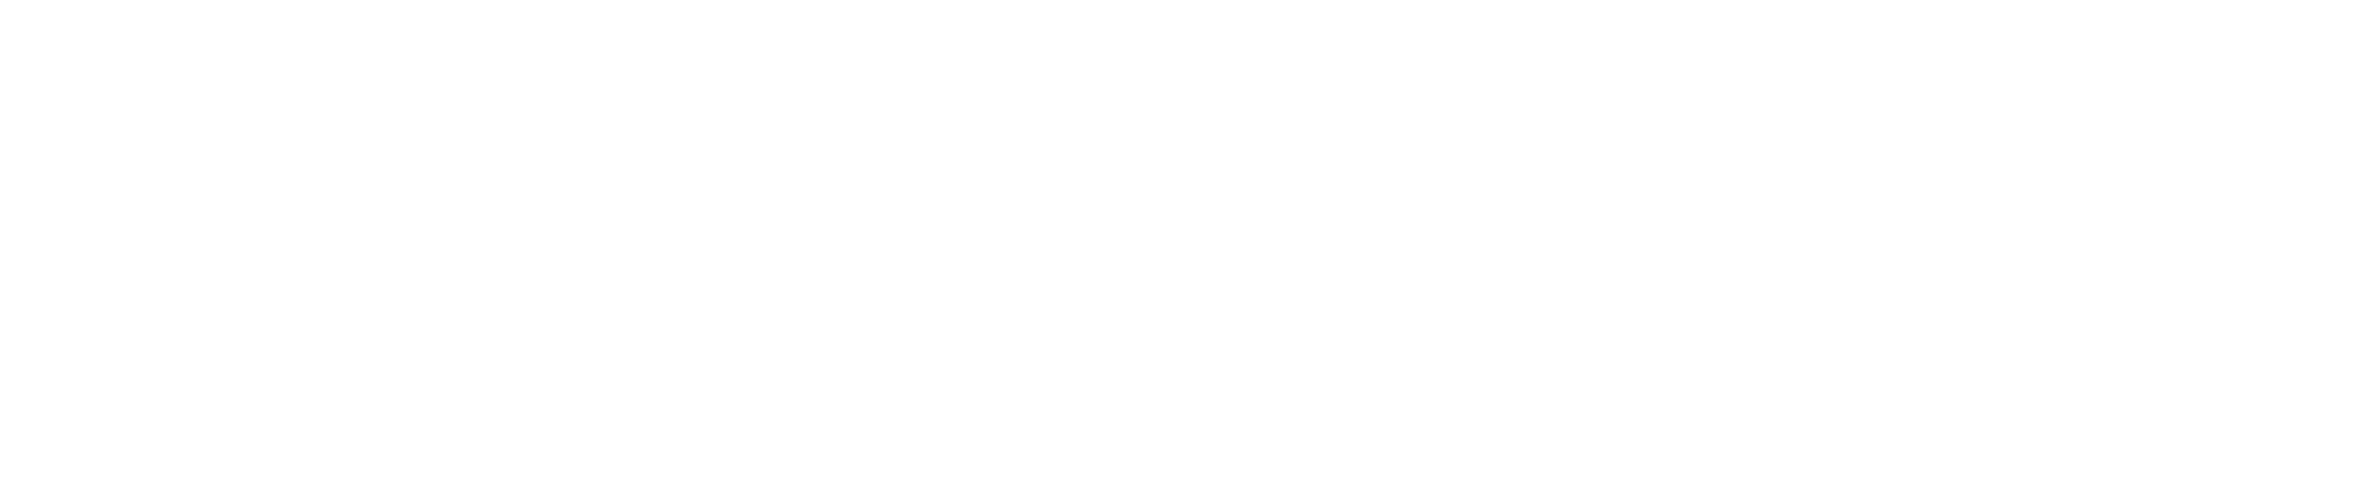 Georgia's House of Etiquette